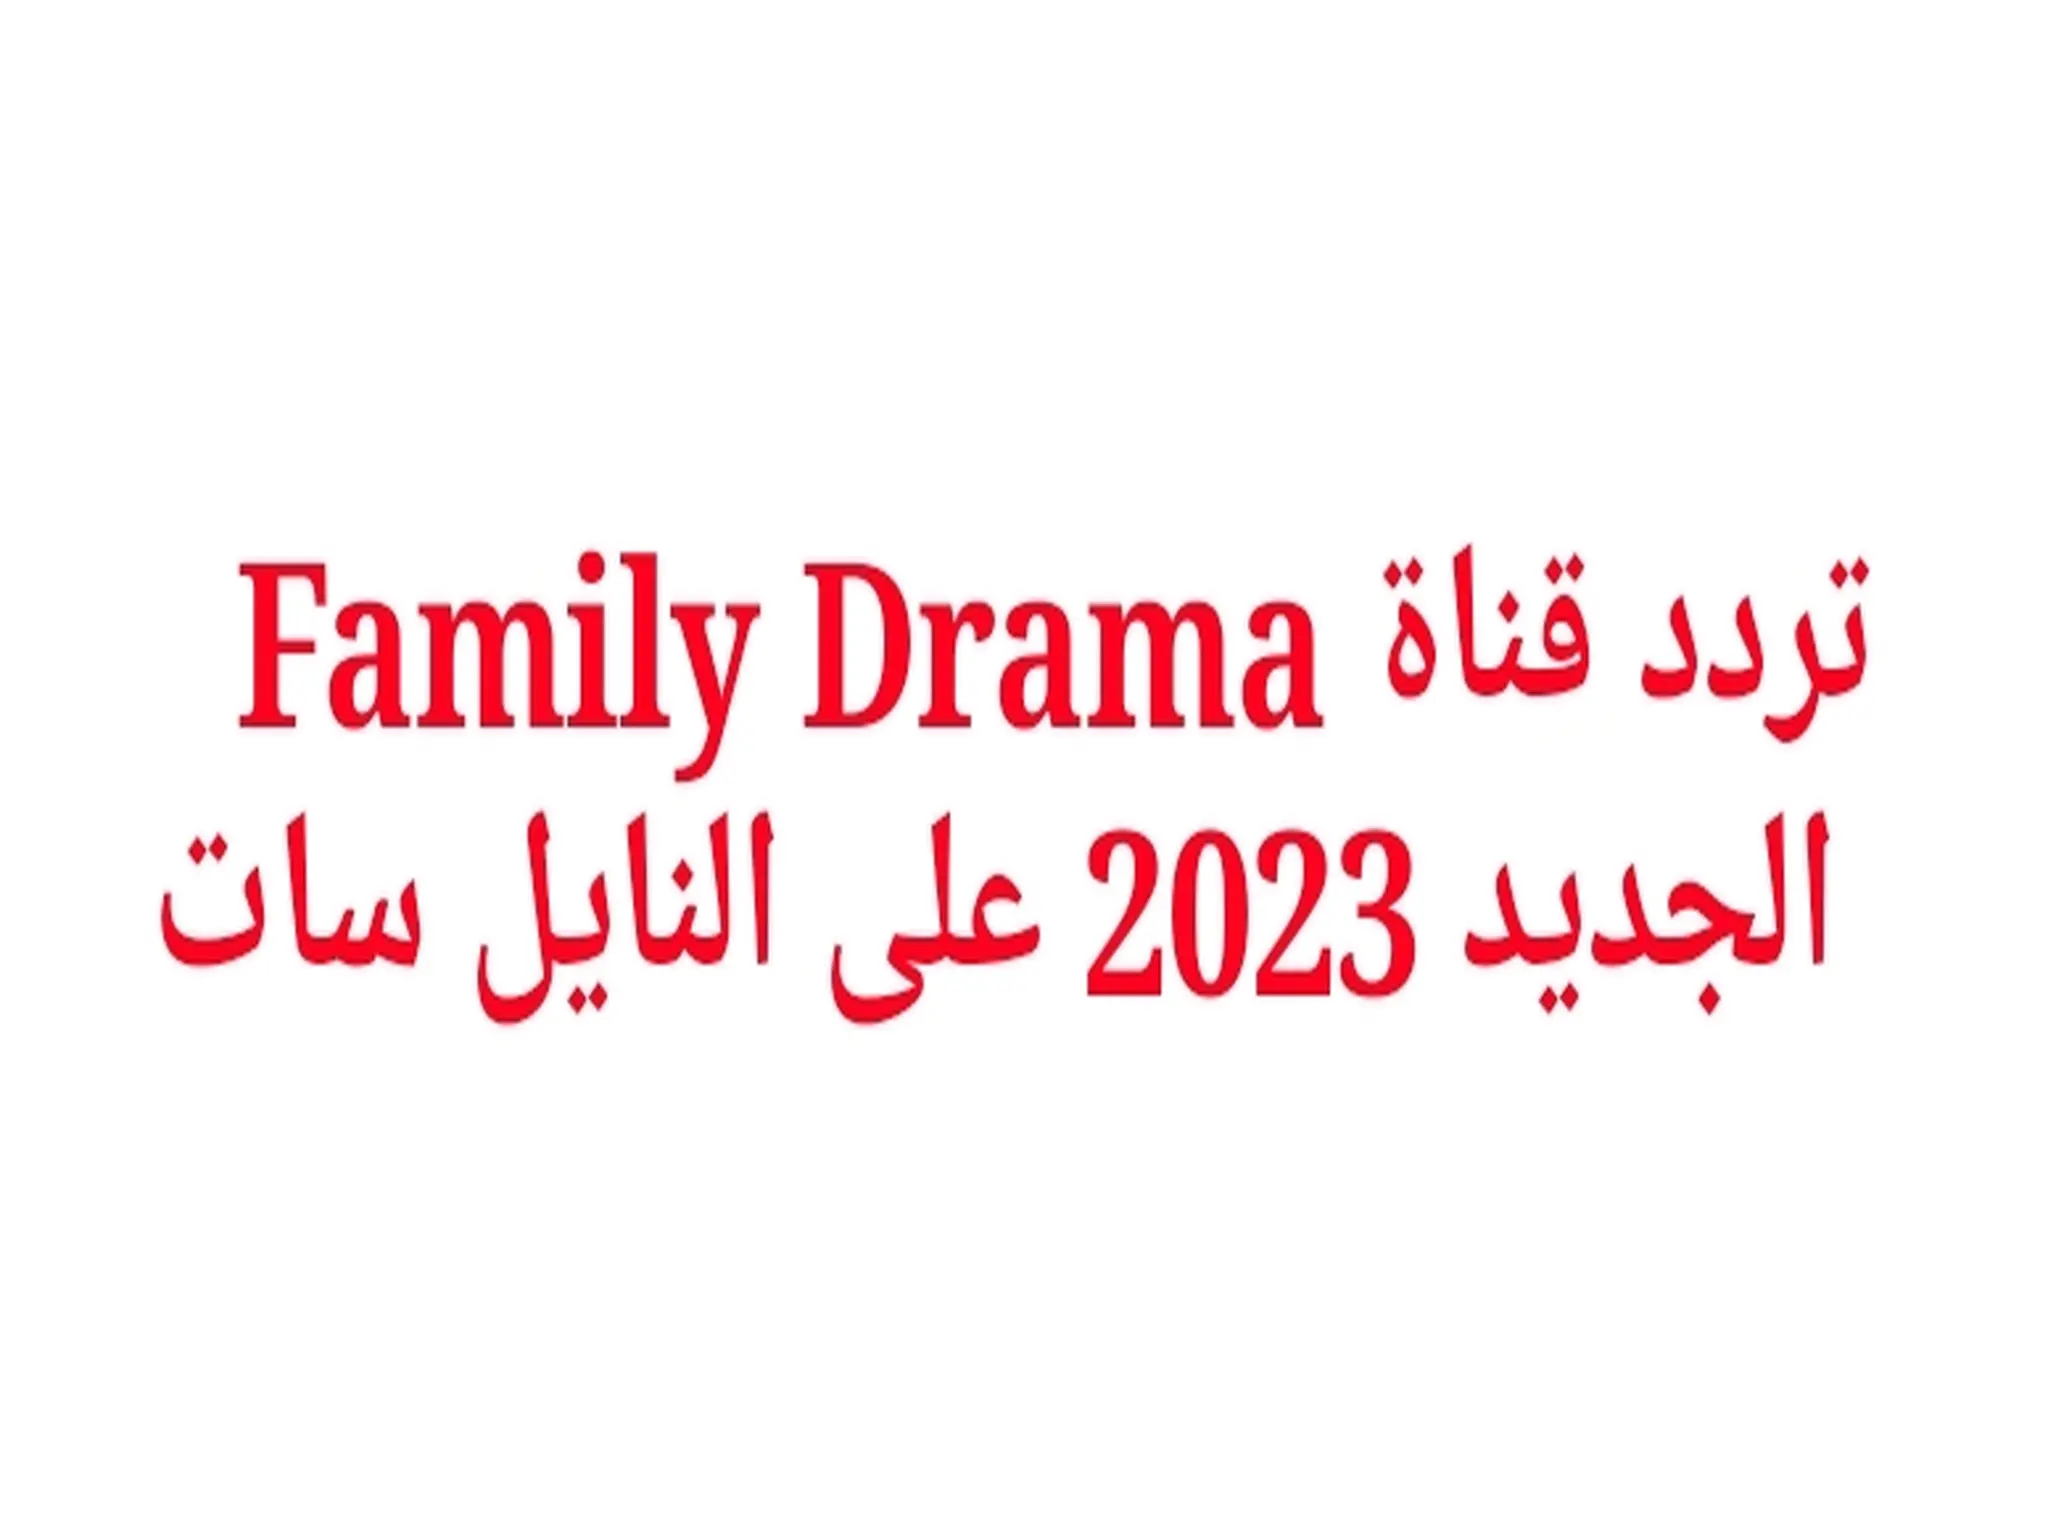 تردد قناة فاميلي دراما Family Drama 2023 الجديد عبر النايل سات